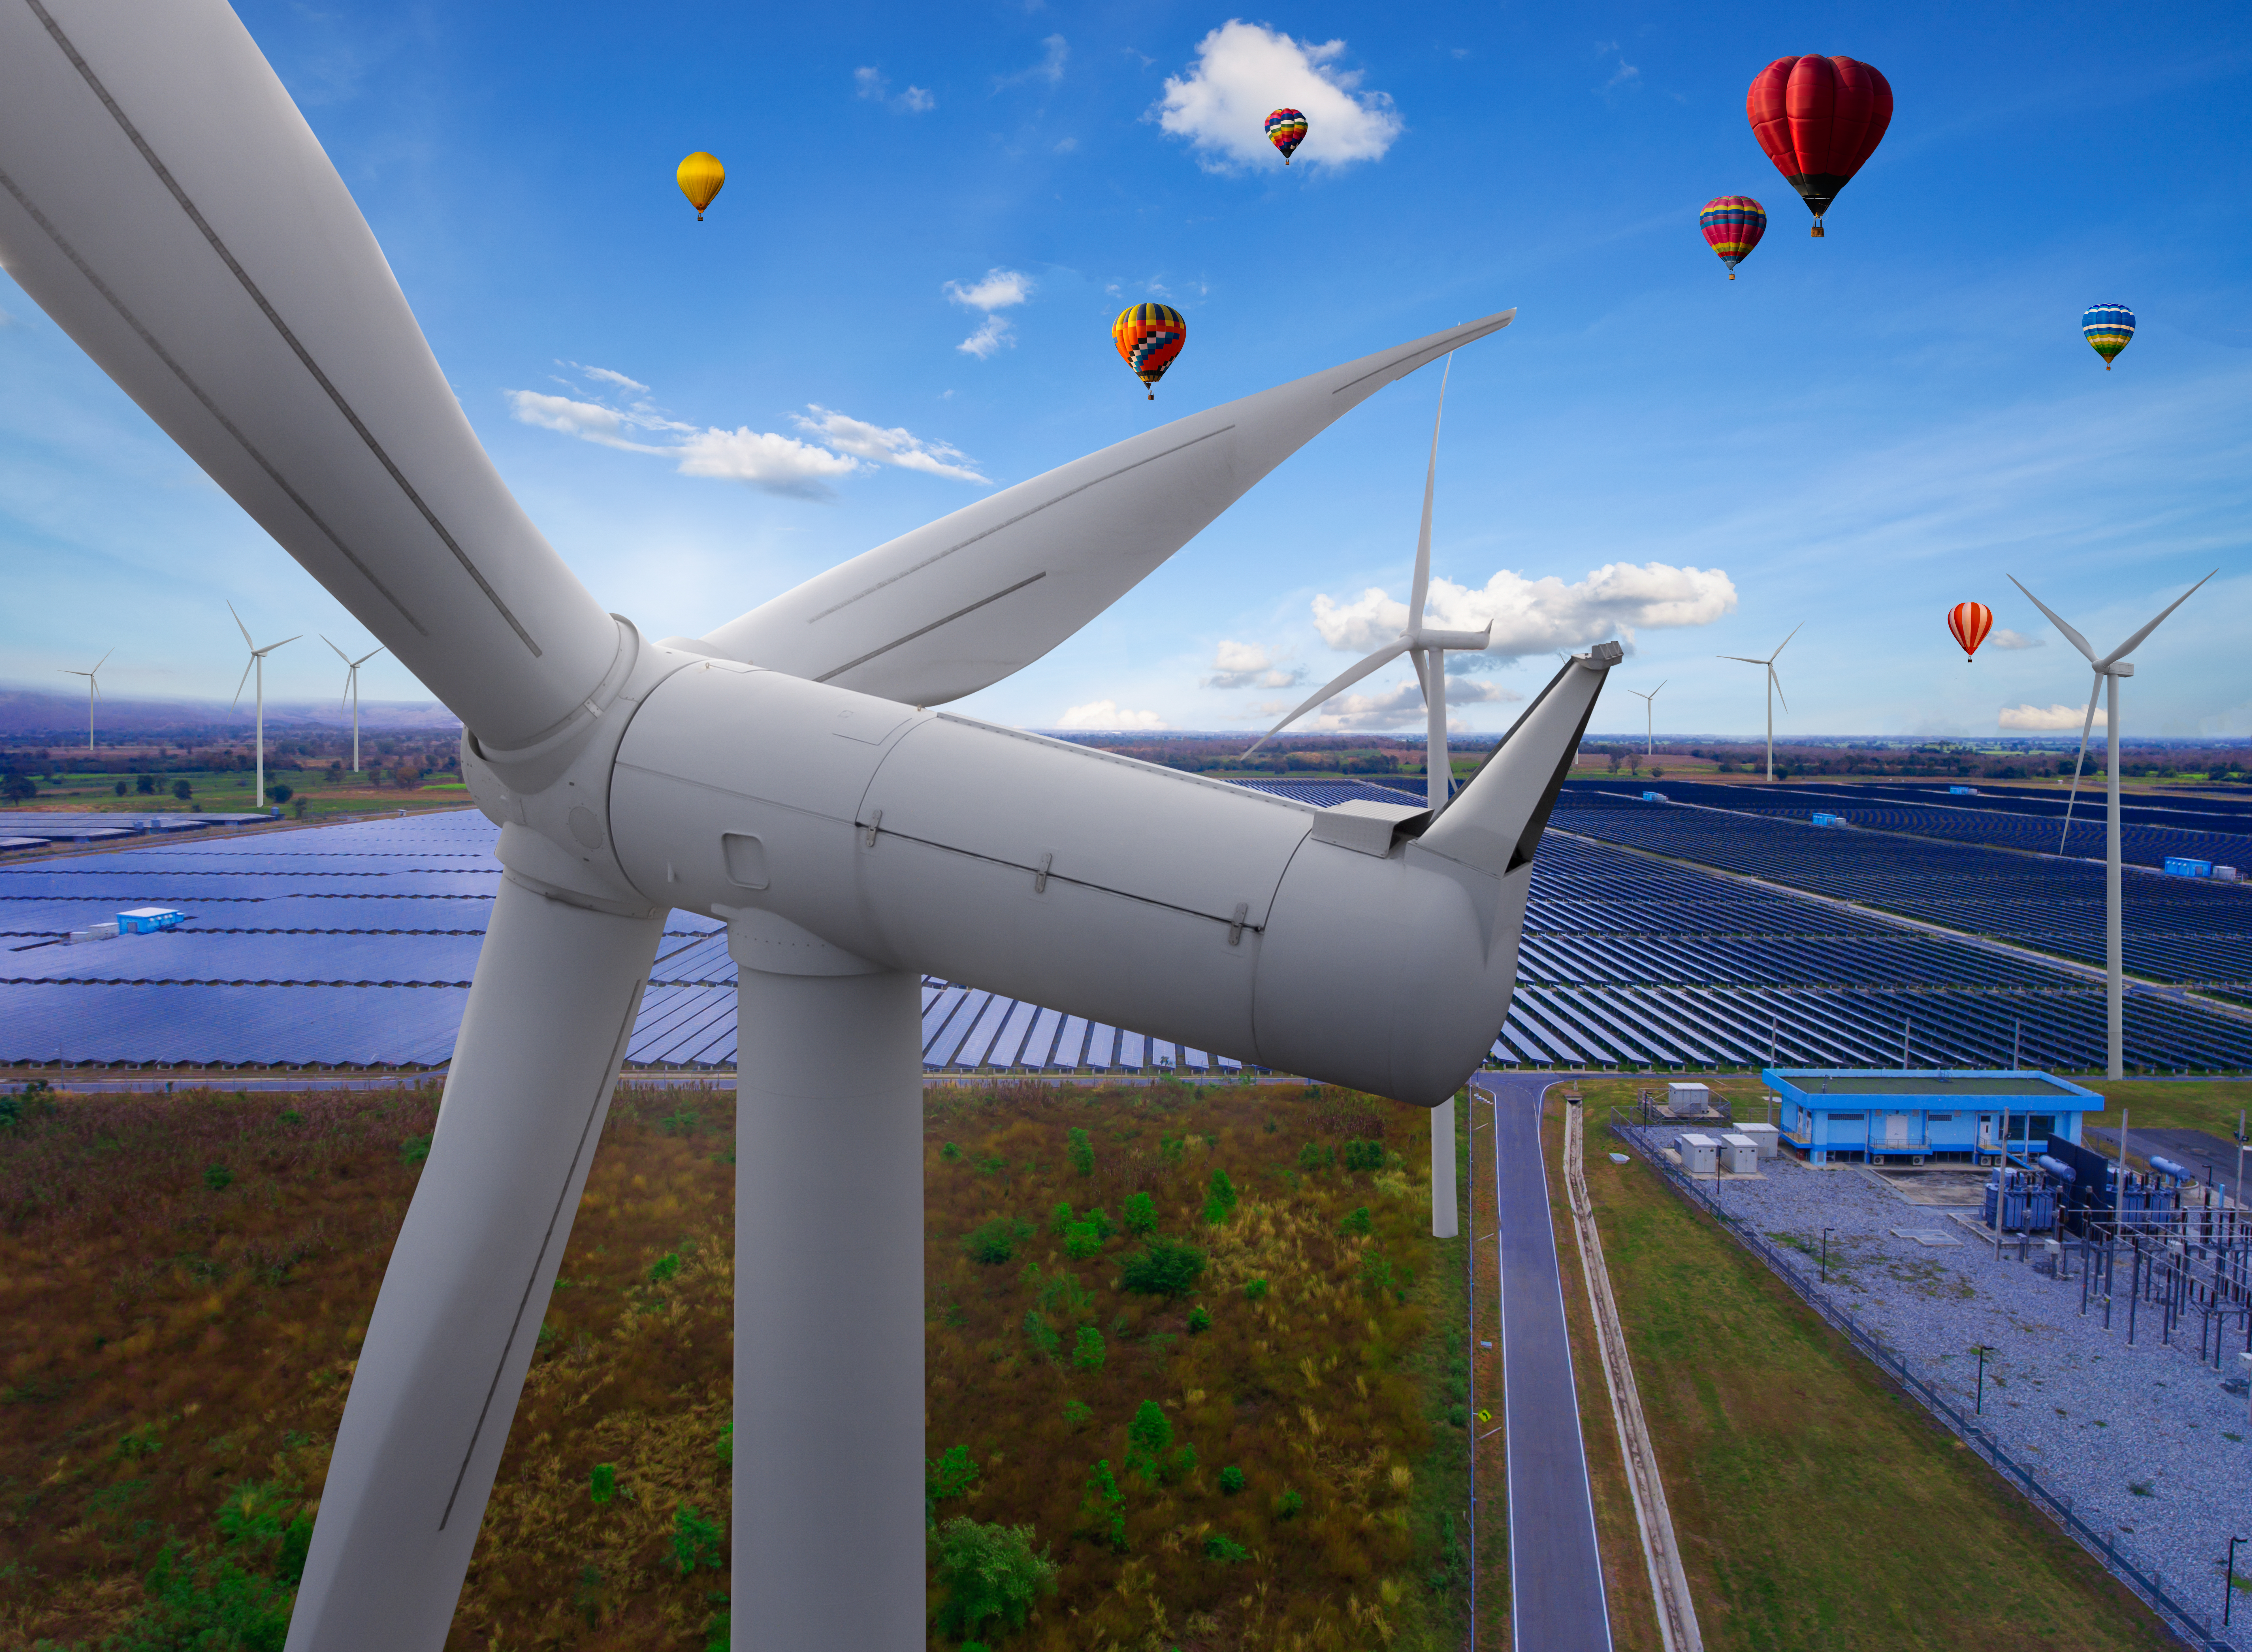 Solar panel and wind turbine farm clean energy.